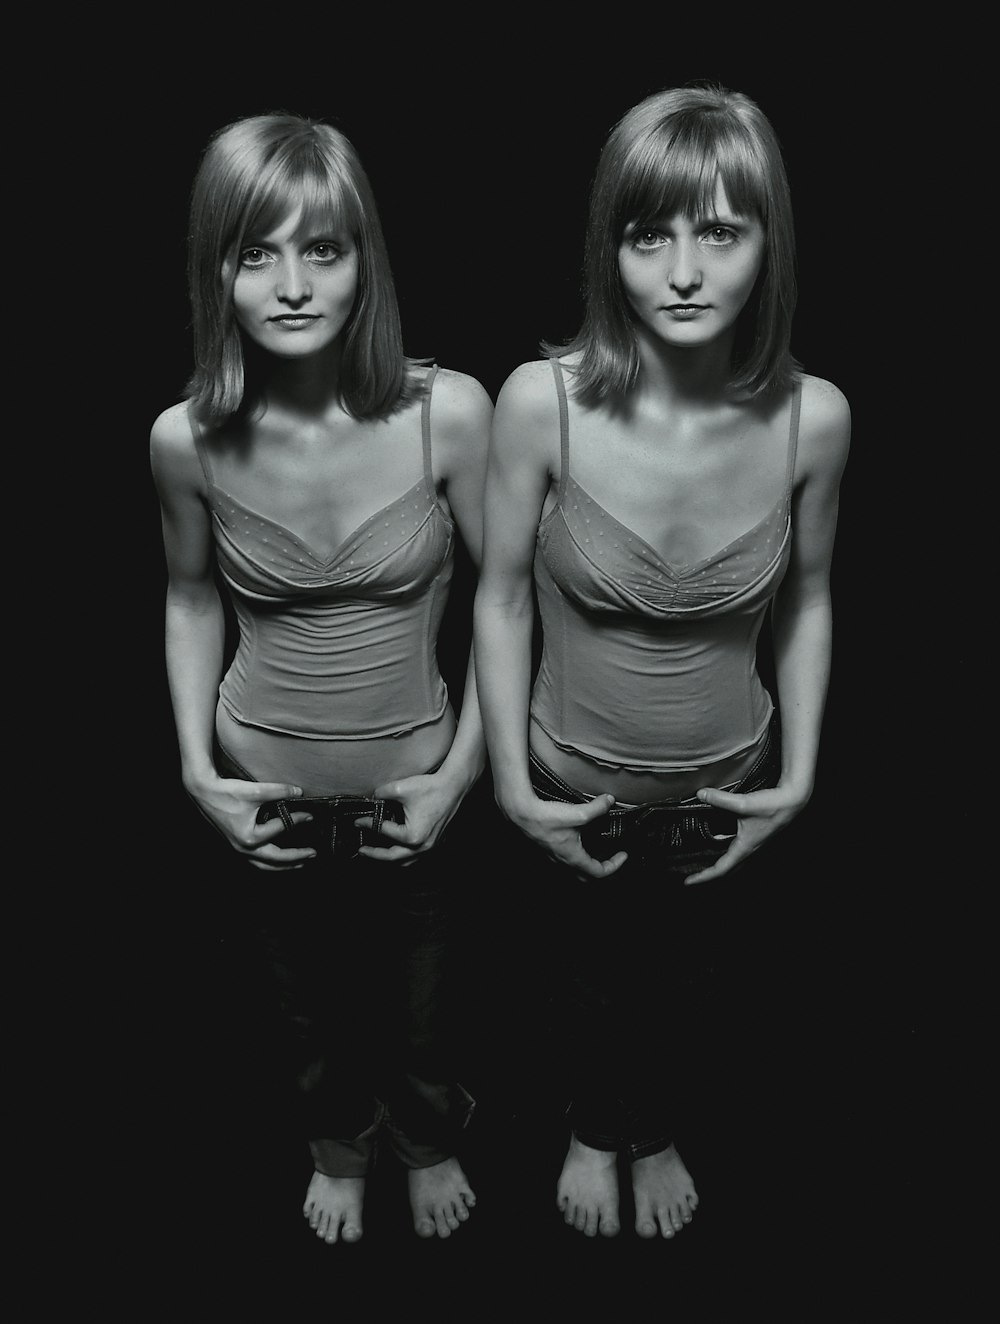 흑백으로 나란히 서 있는 두 여성